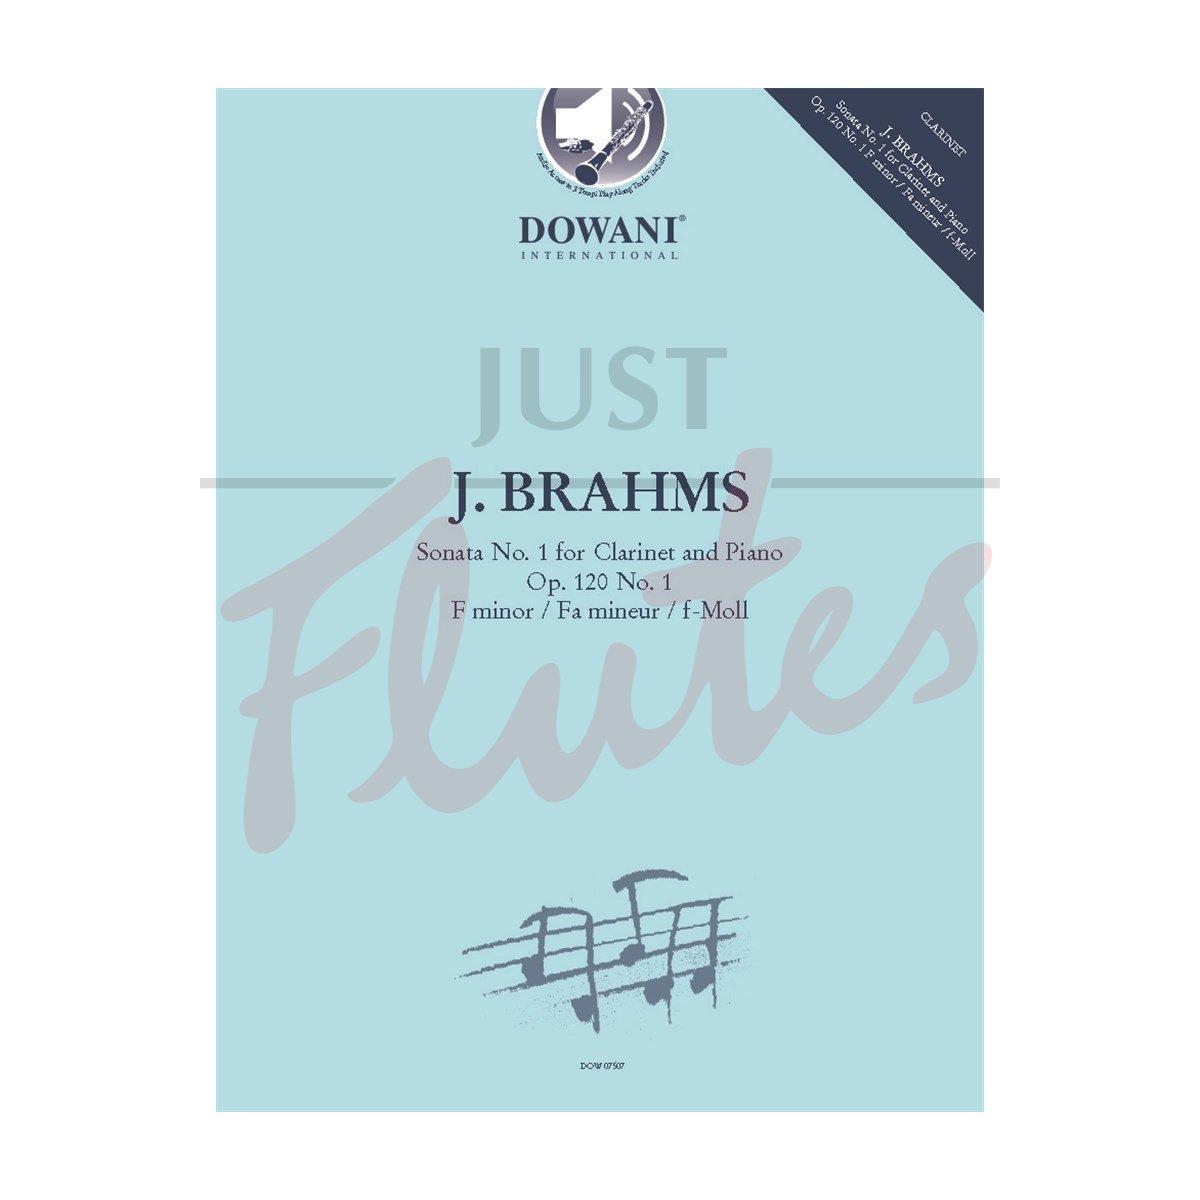 Sonata No. 1 in F minor for Clarinet and Piano